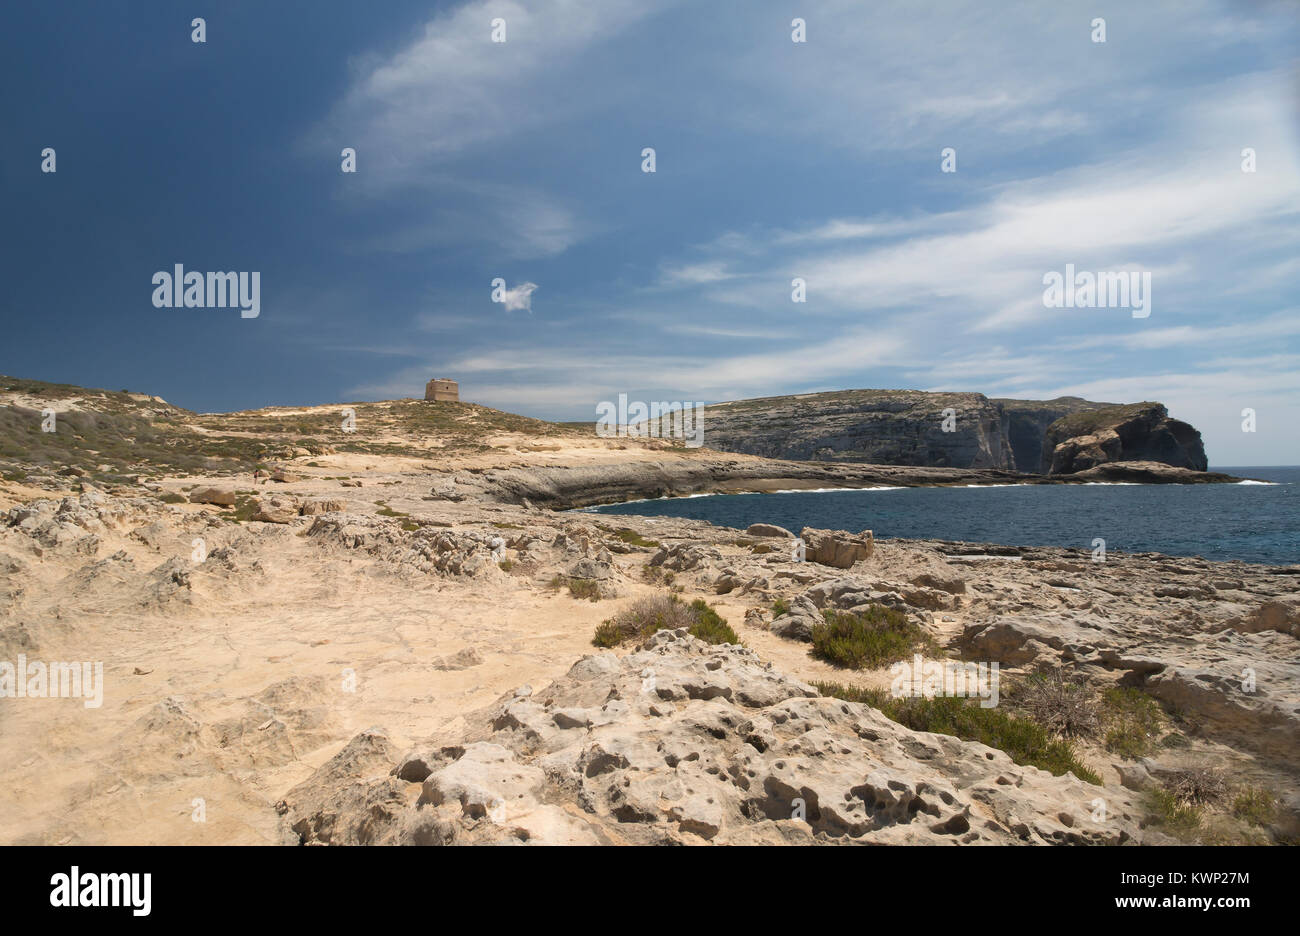 Una immagine di una torre di avvistamento e la costa a Dwerja Bay, Gozo, che è un'isola dell'arcipelago maltese nel Mar Mediterraneo. Foto Stock